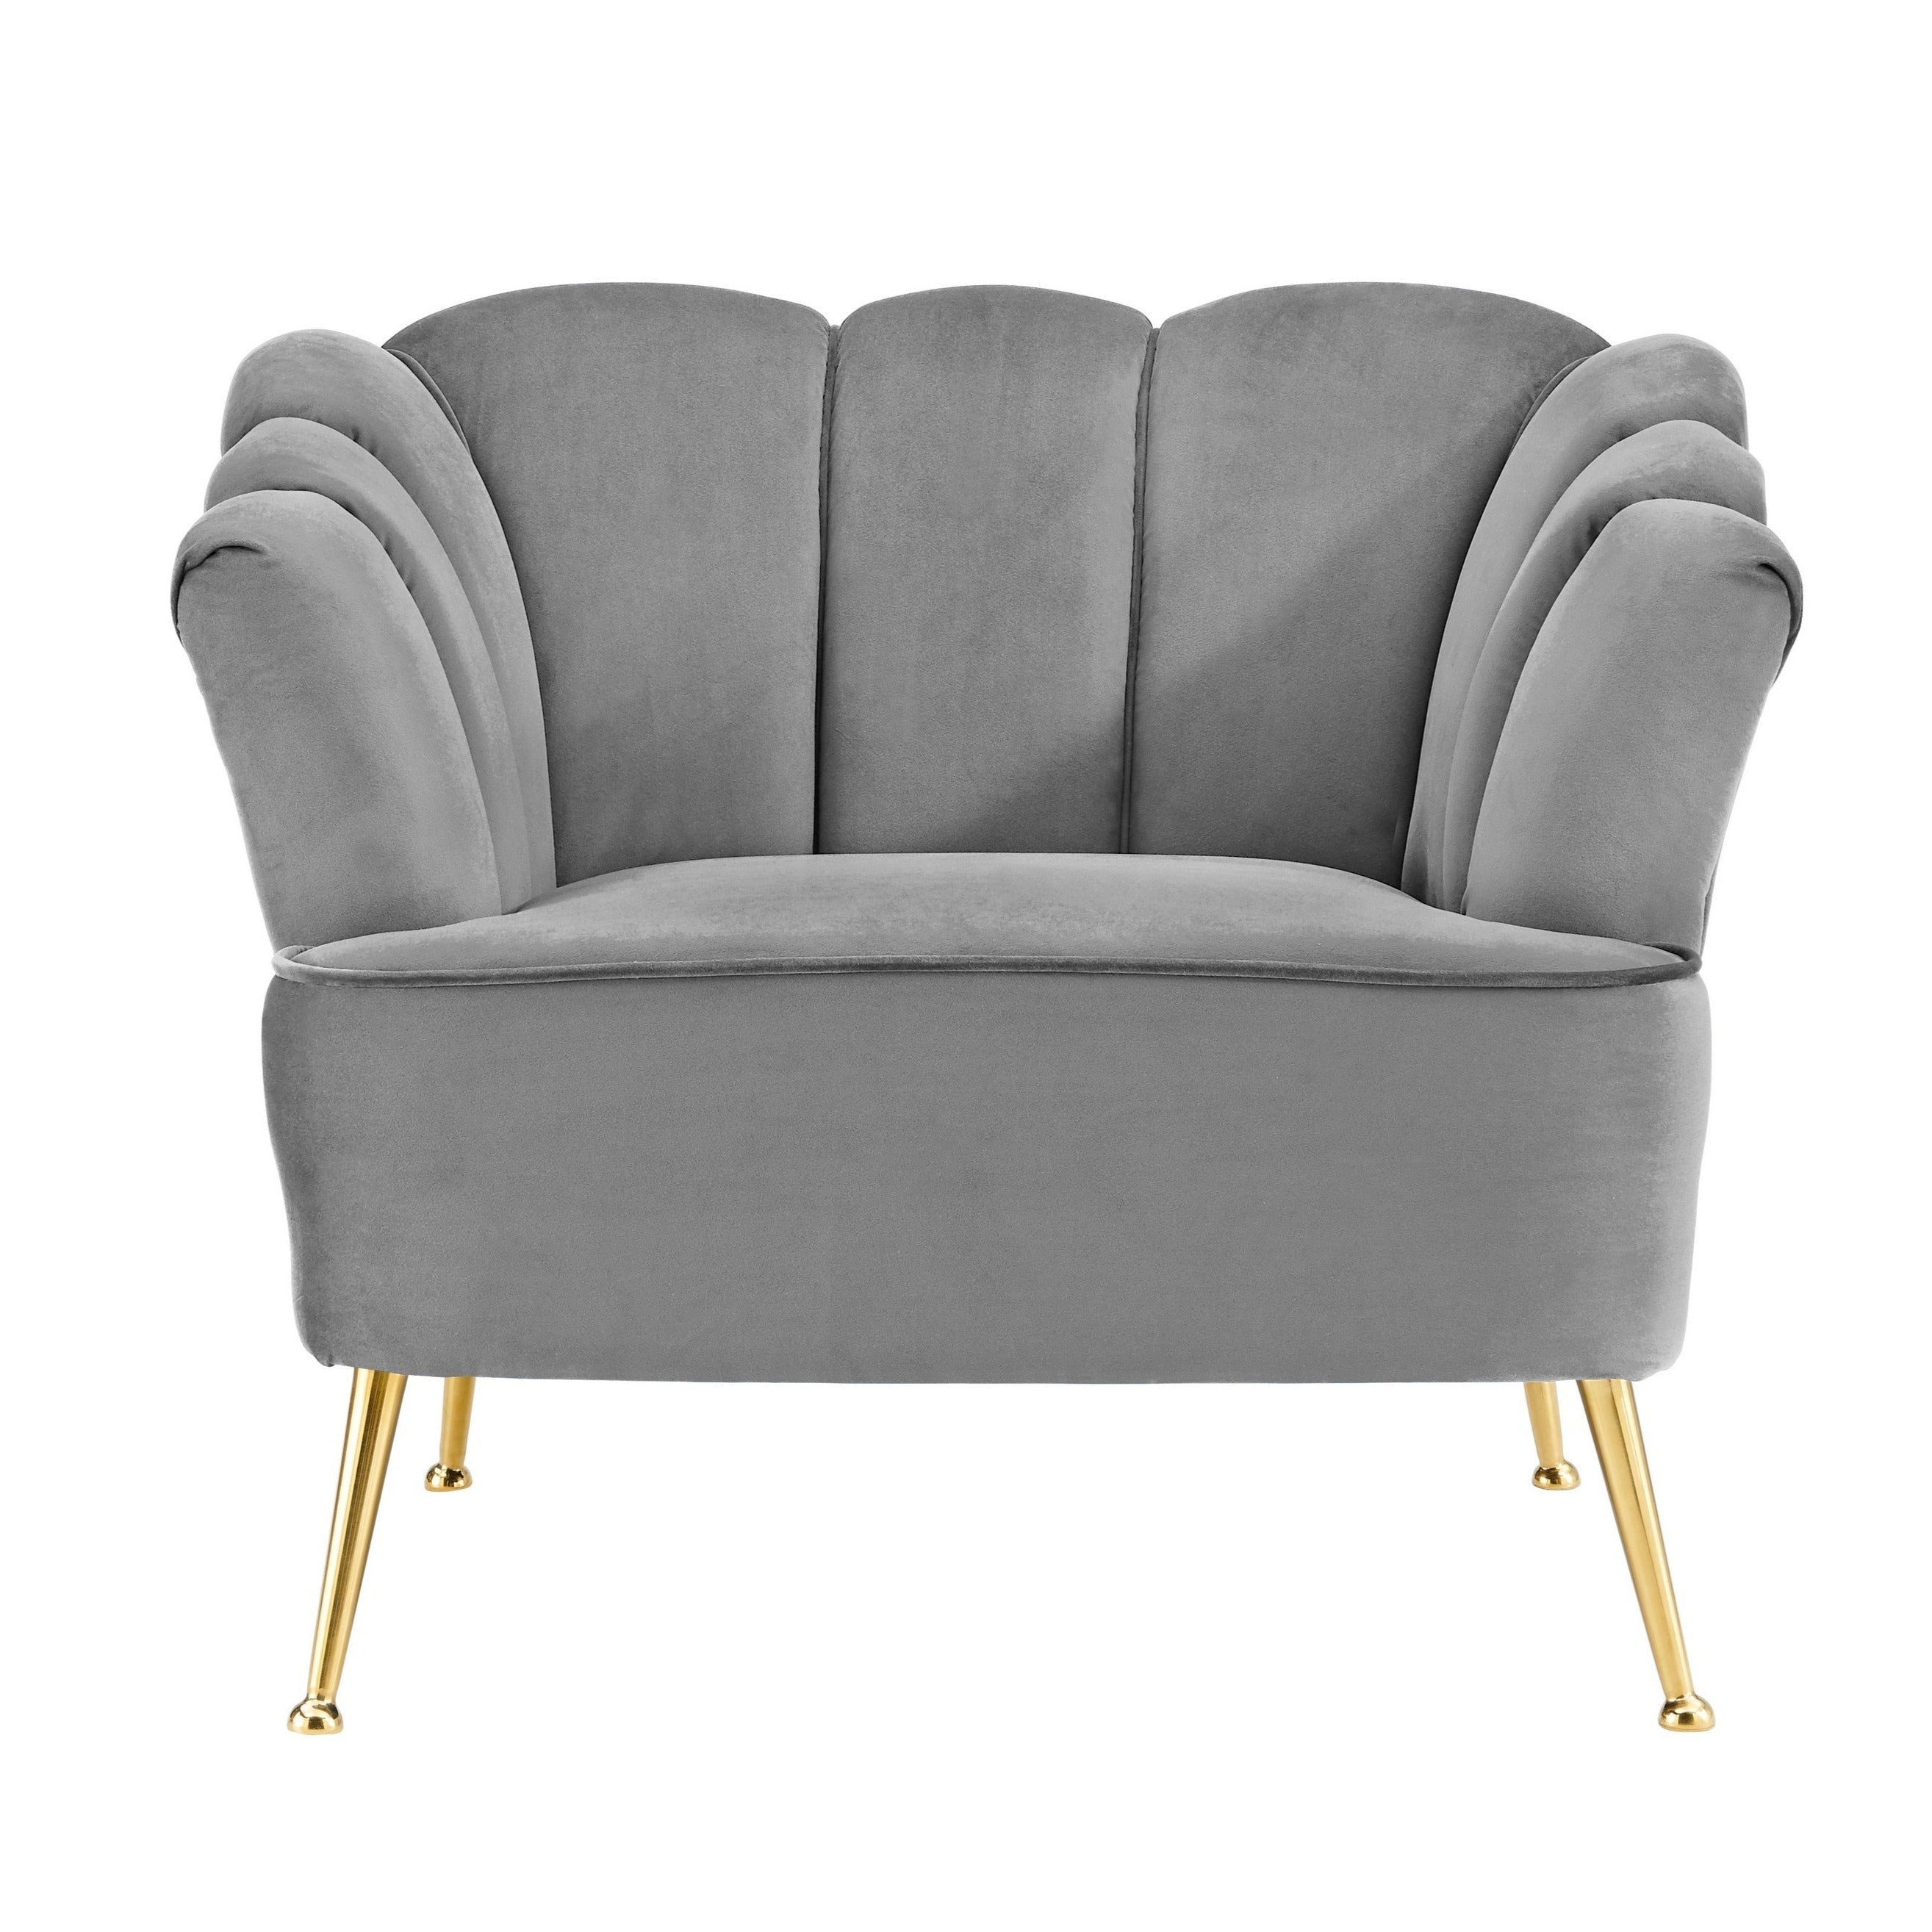 Aisha Velvet Club Chair With Gold Legs